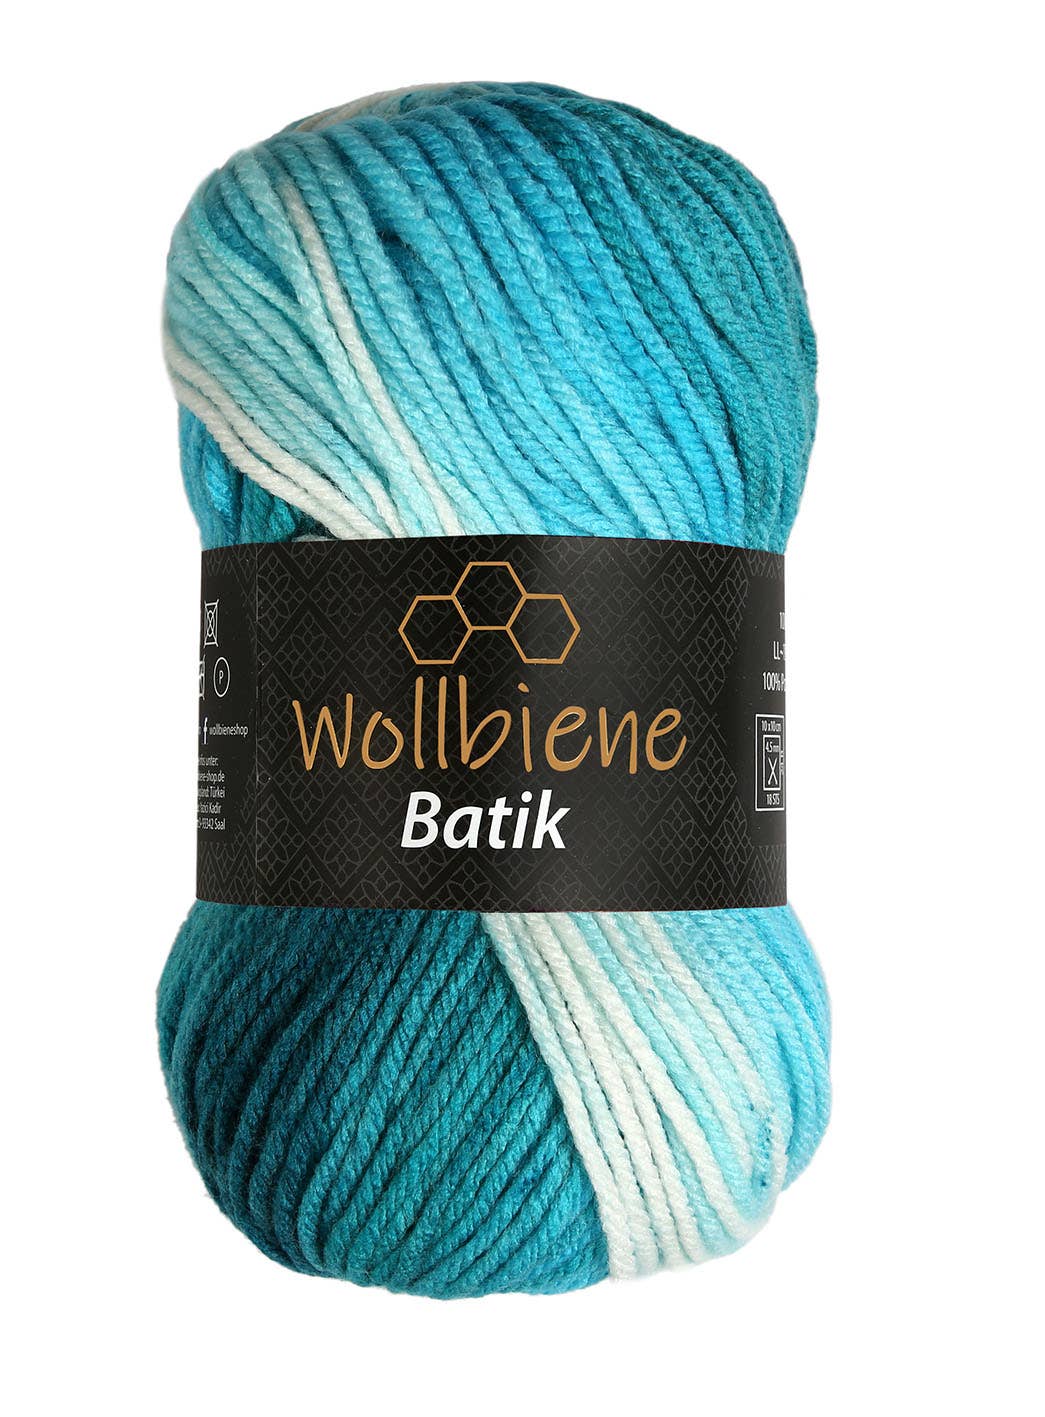 Wollbiene Batik Farbverlaufswolle Strickwolle